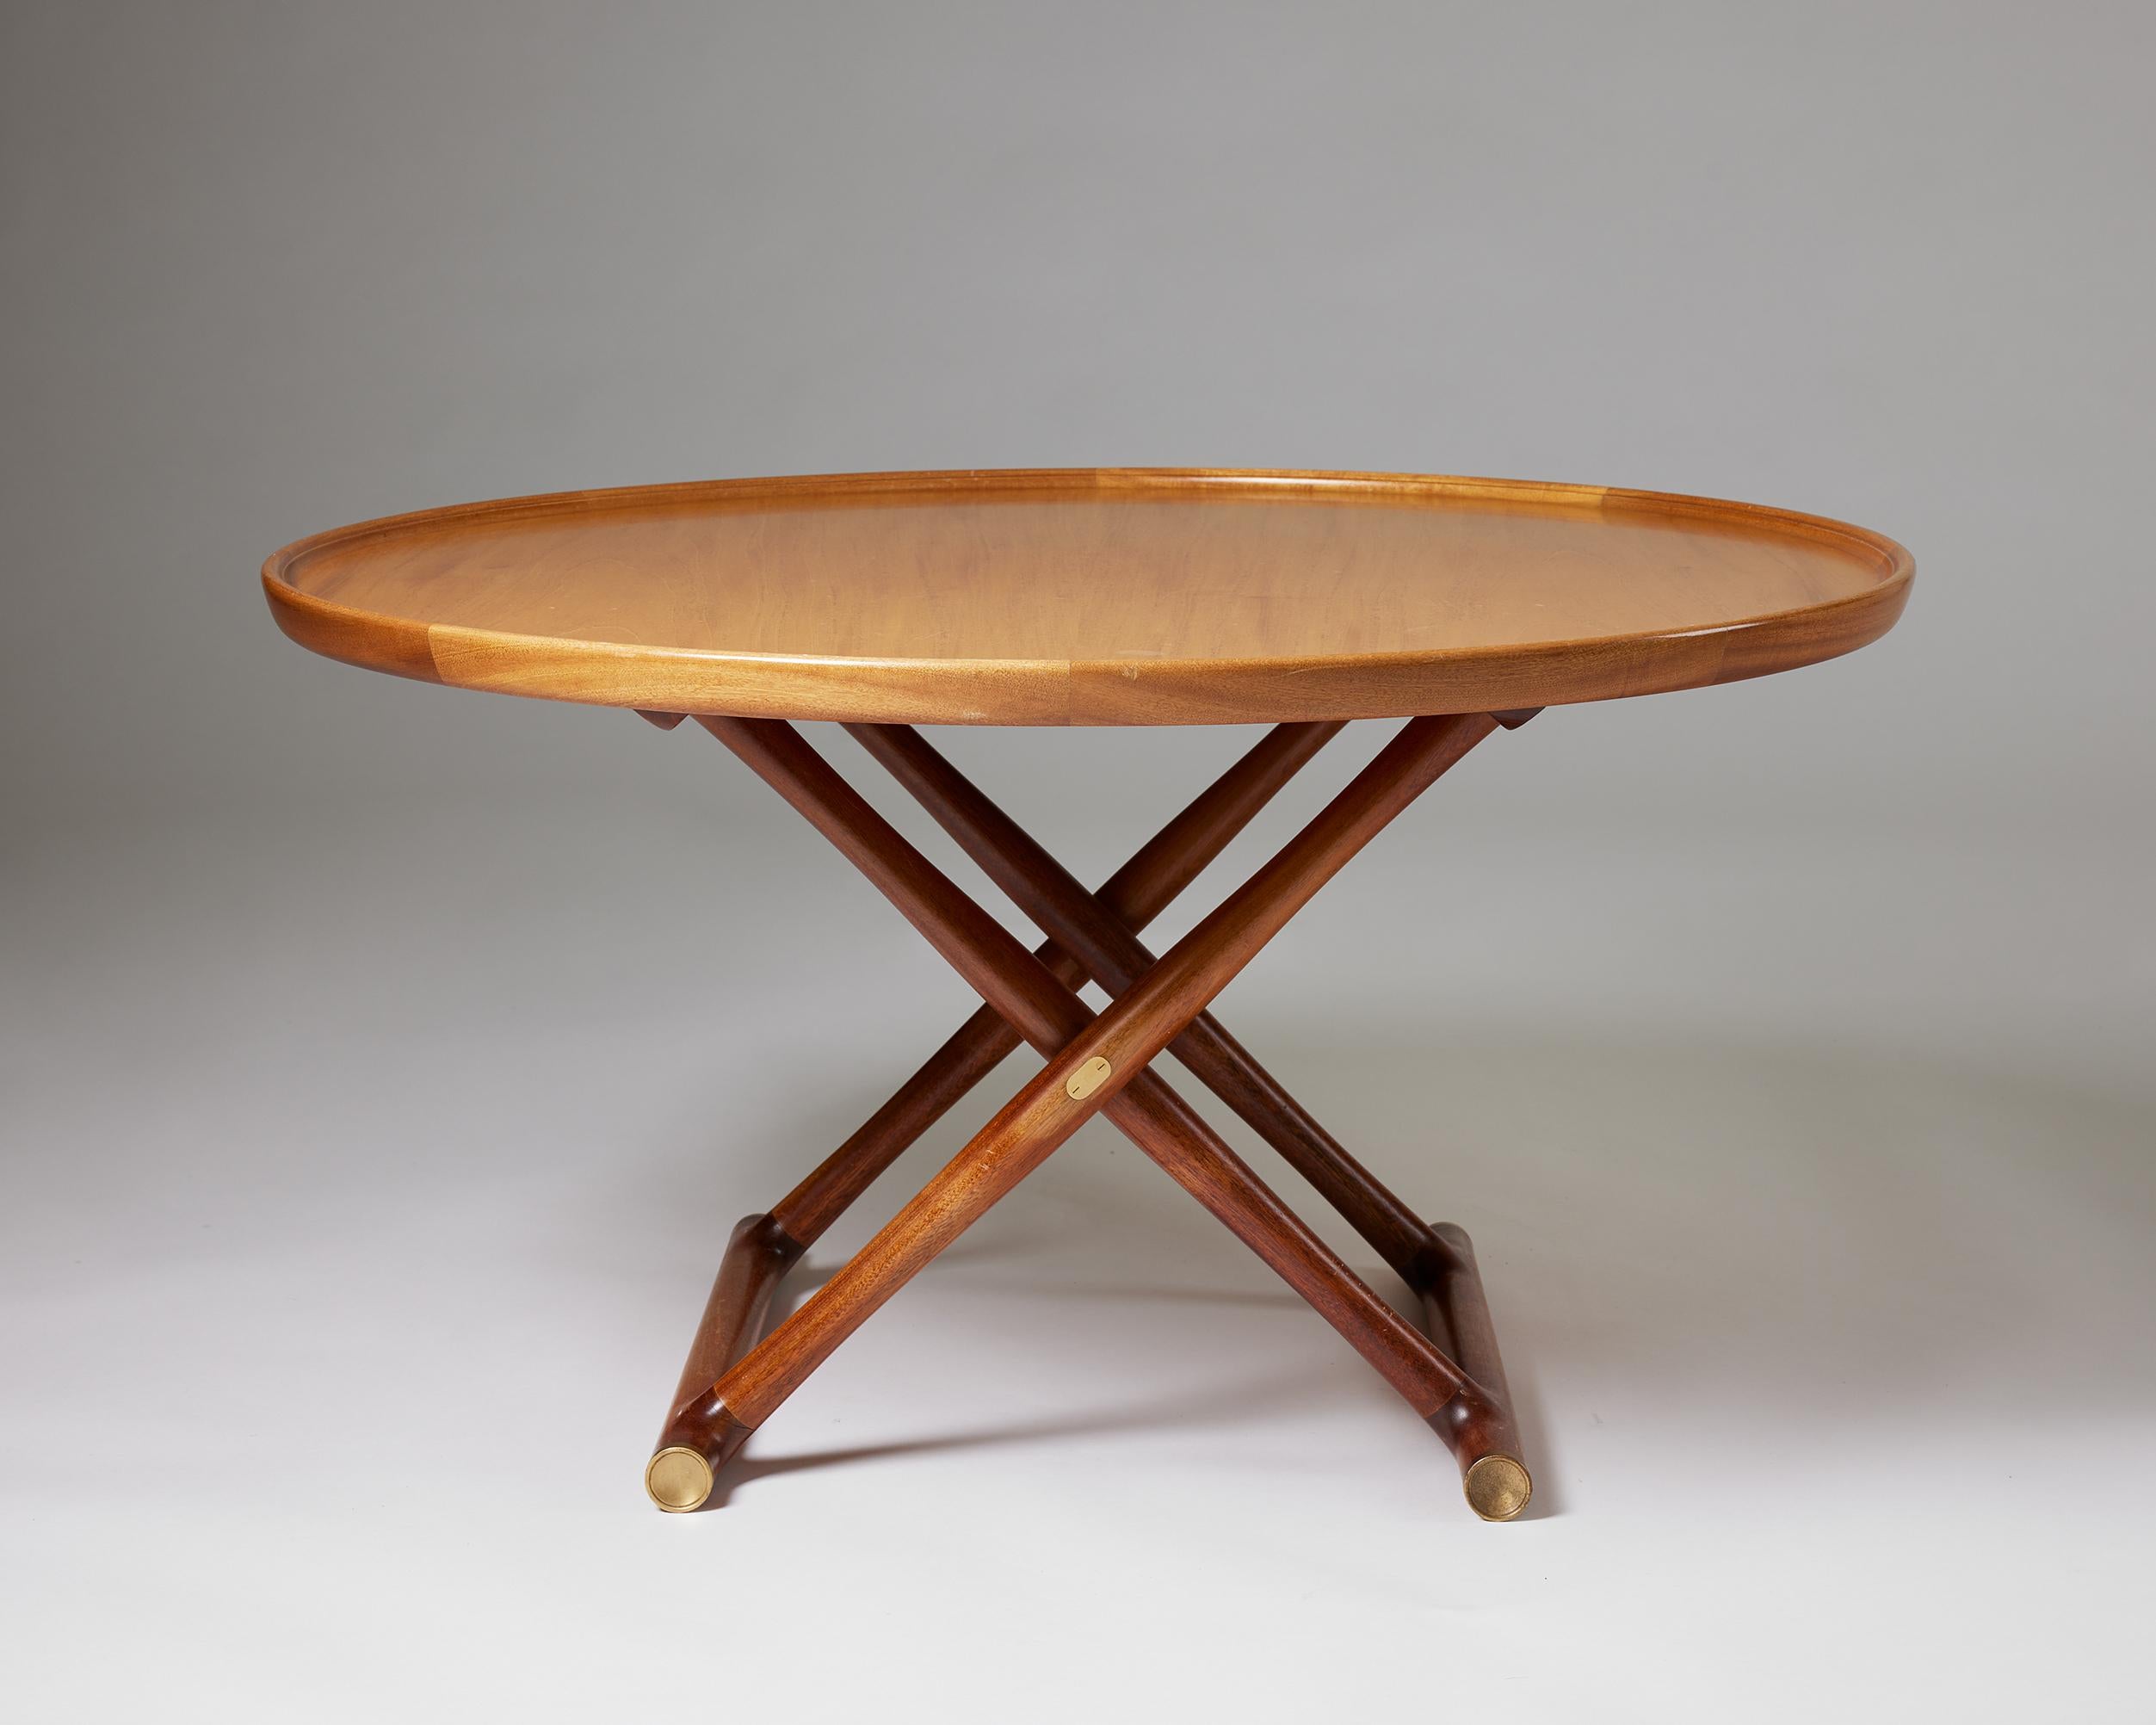 20th Century ‘Egyptian Table’ Designed by Mogens Lassen for Rud. Rasmussen, Denmark, 1935